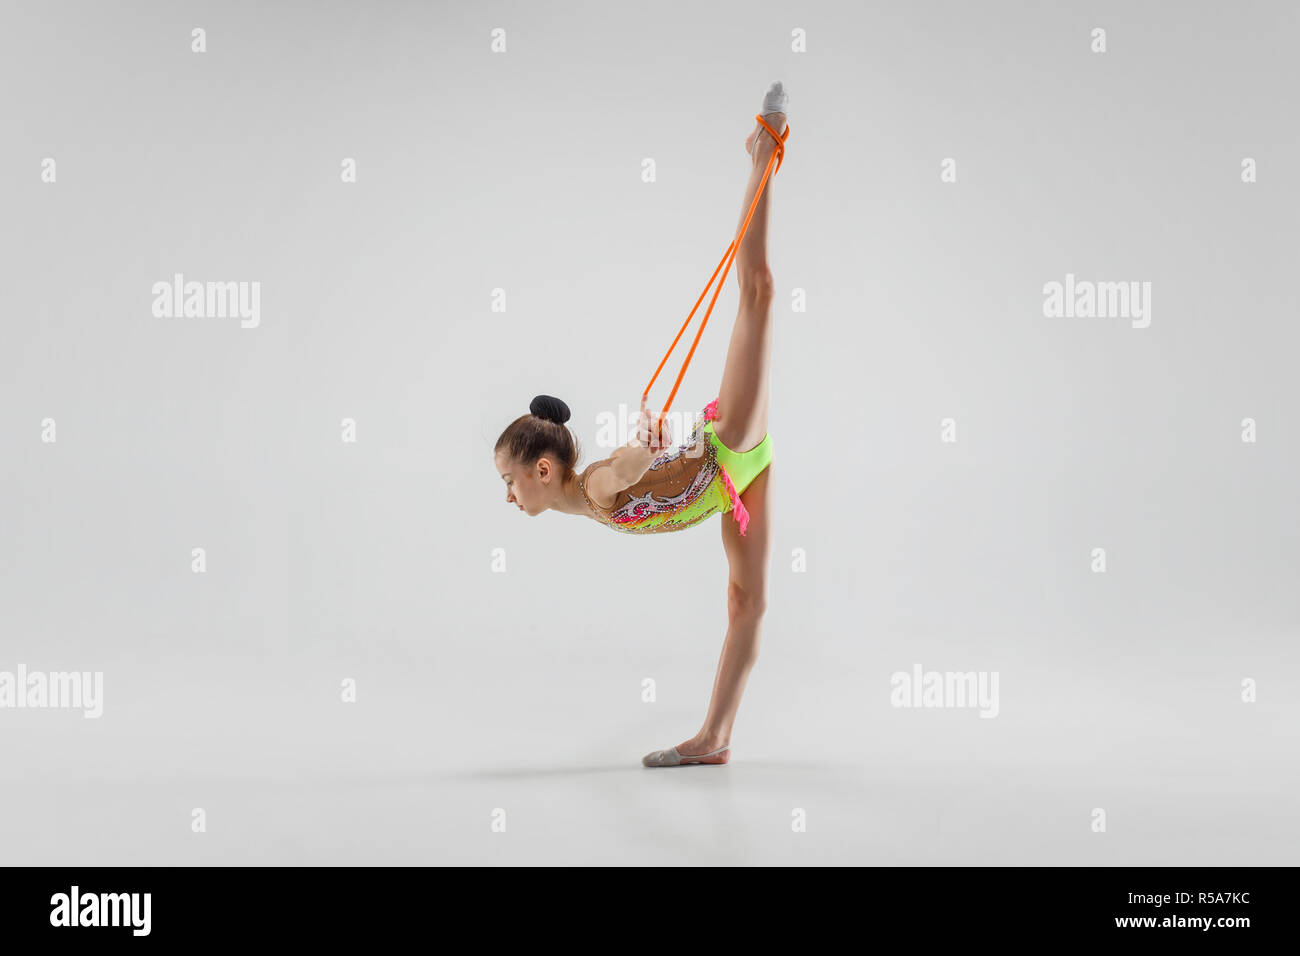 Die jugendlich weiblich Mädchen Gymnastik Übungen mit Seil springen auf  einem grauen studio Hintergrund isoliert. Die Gymnastik, Dehnen, Fitness,  Lifestyle, Ausbildung, Sport Konzept Stockfotografie - Alamy